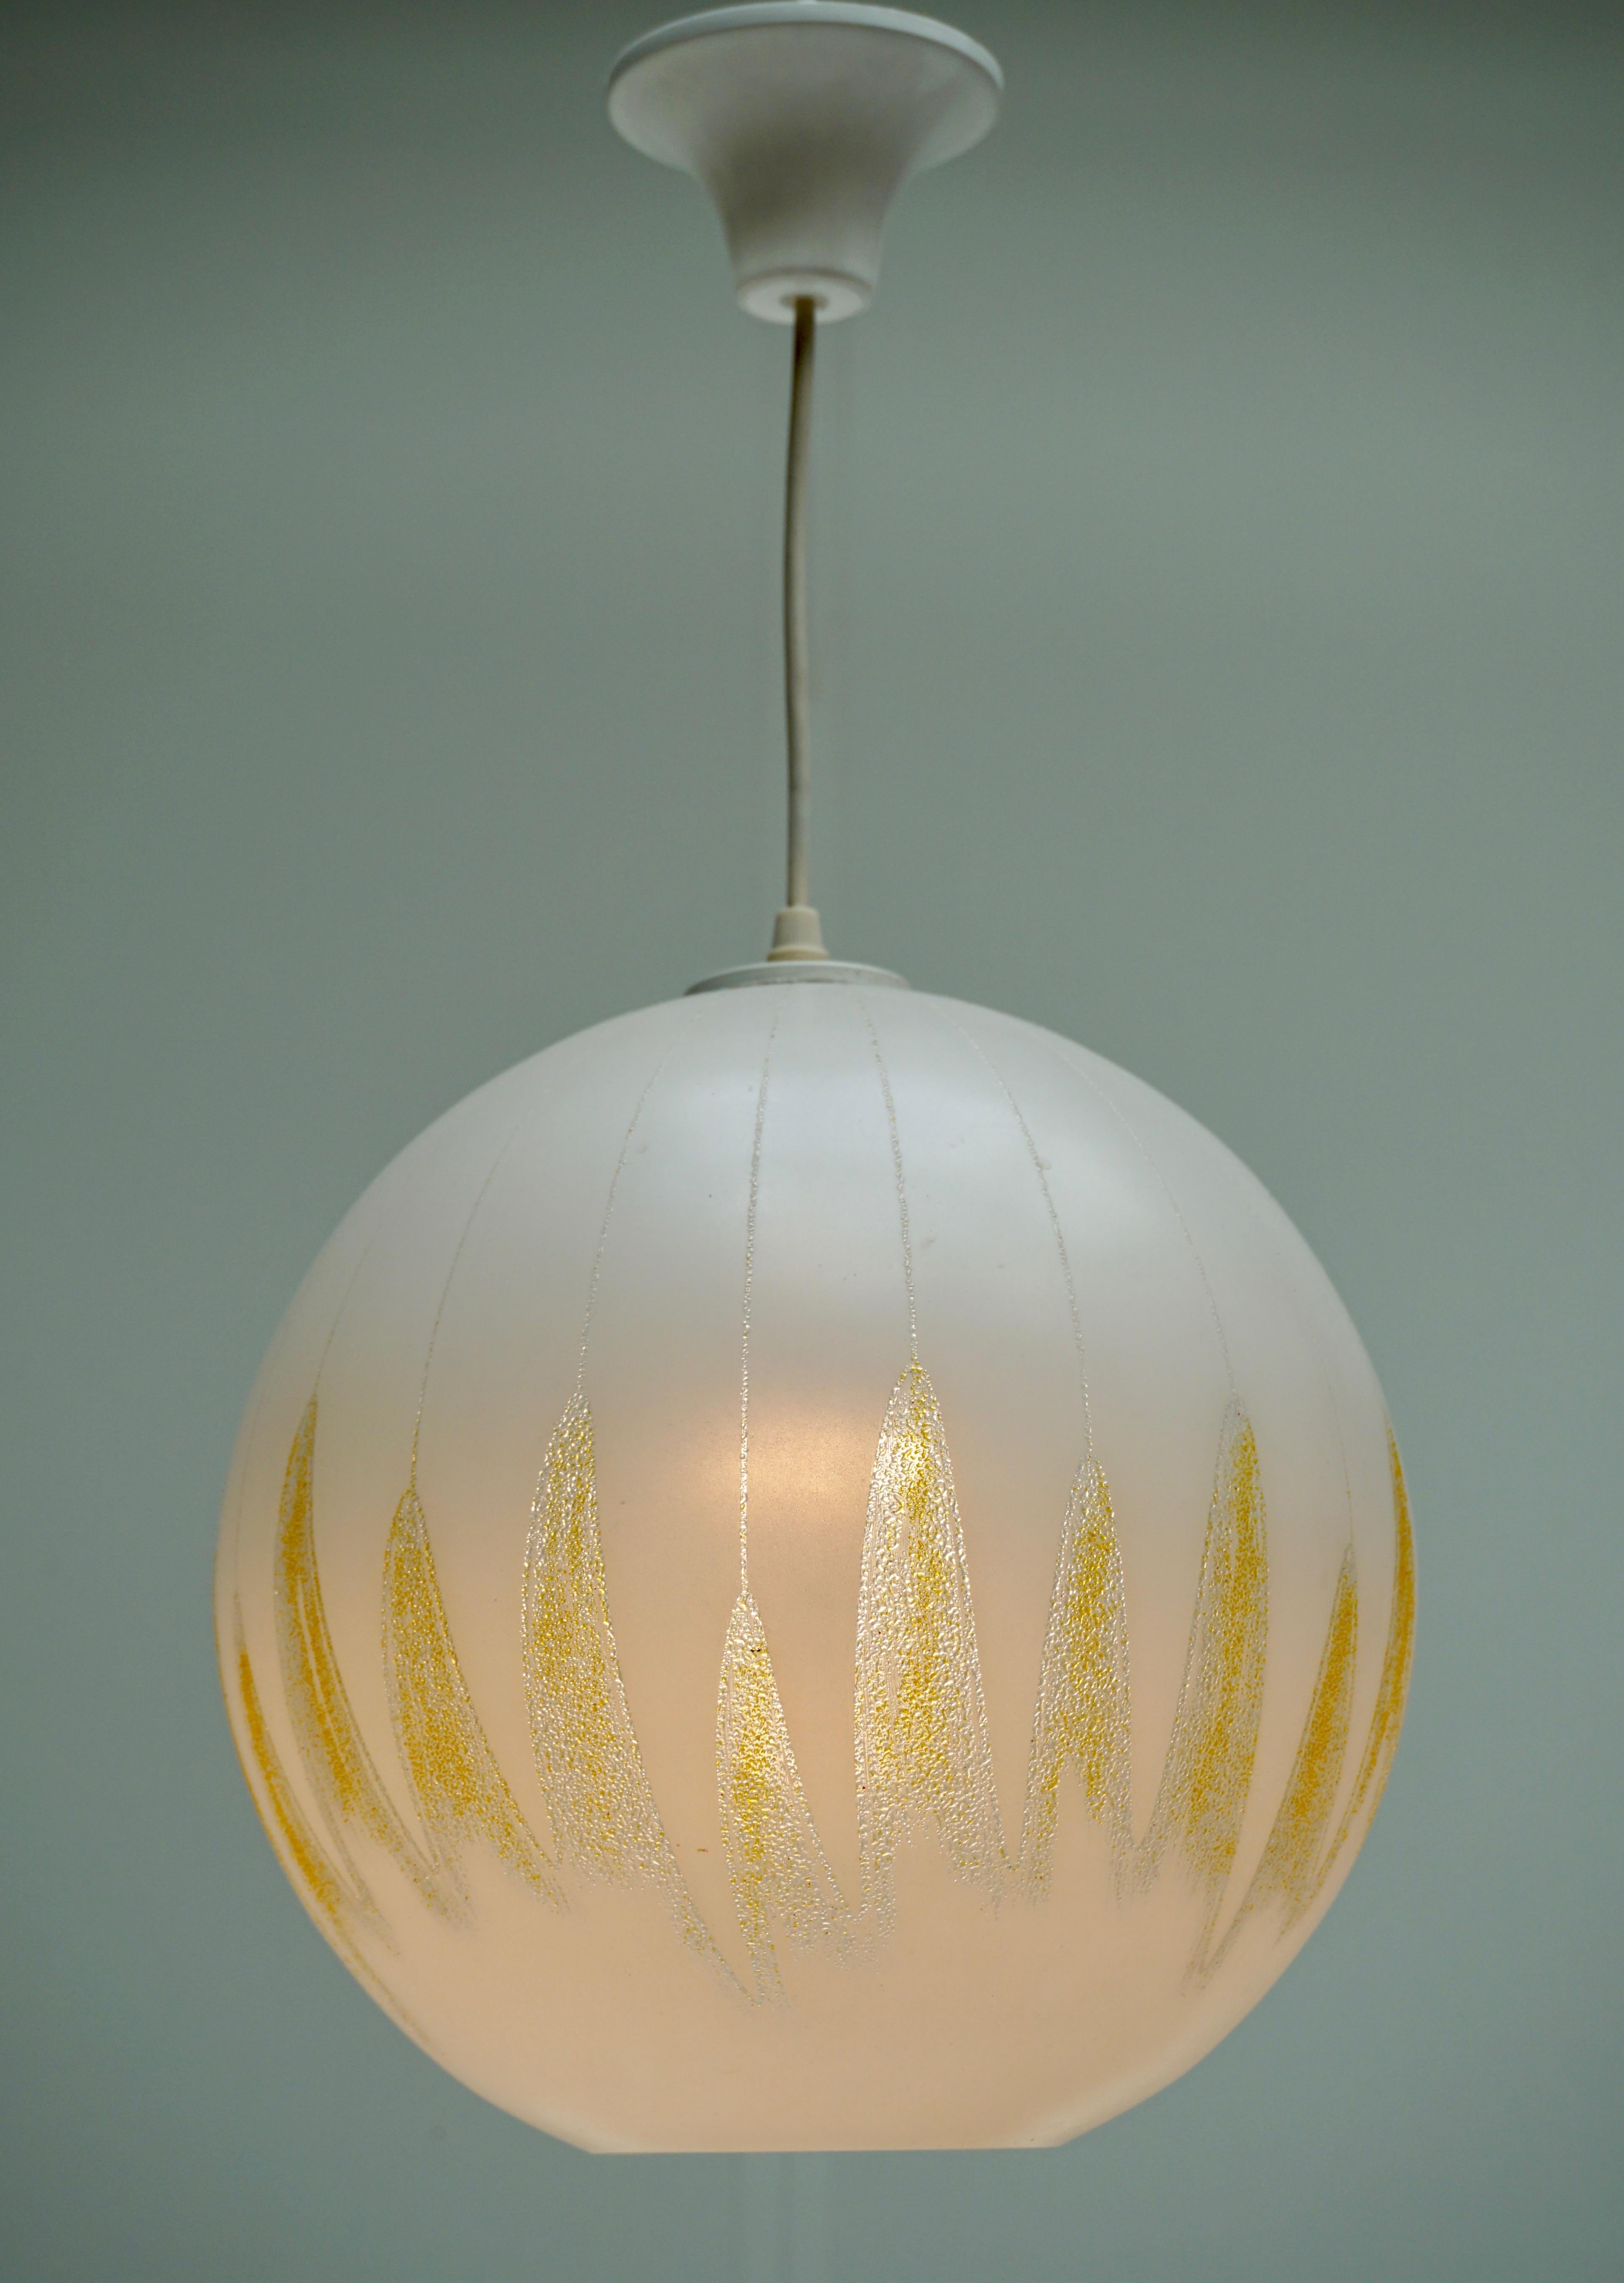 Italienische Deckenlampe aus Muranoglas mit gelbem Dekor.
Maße: Durchmesser 29 cm.
Höhe 100 cm.